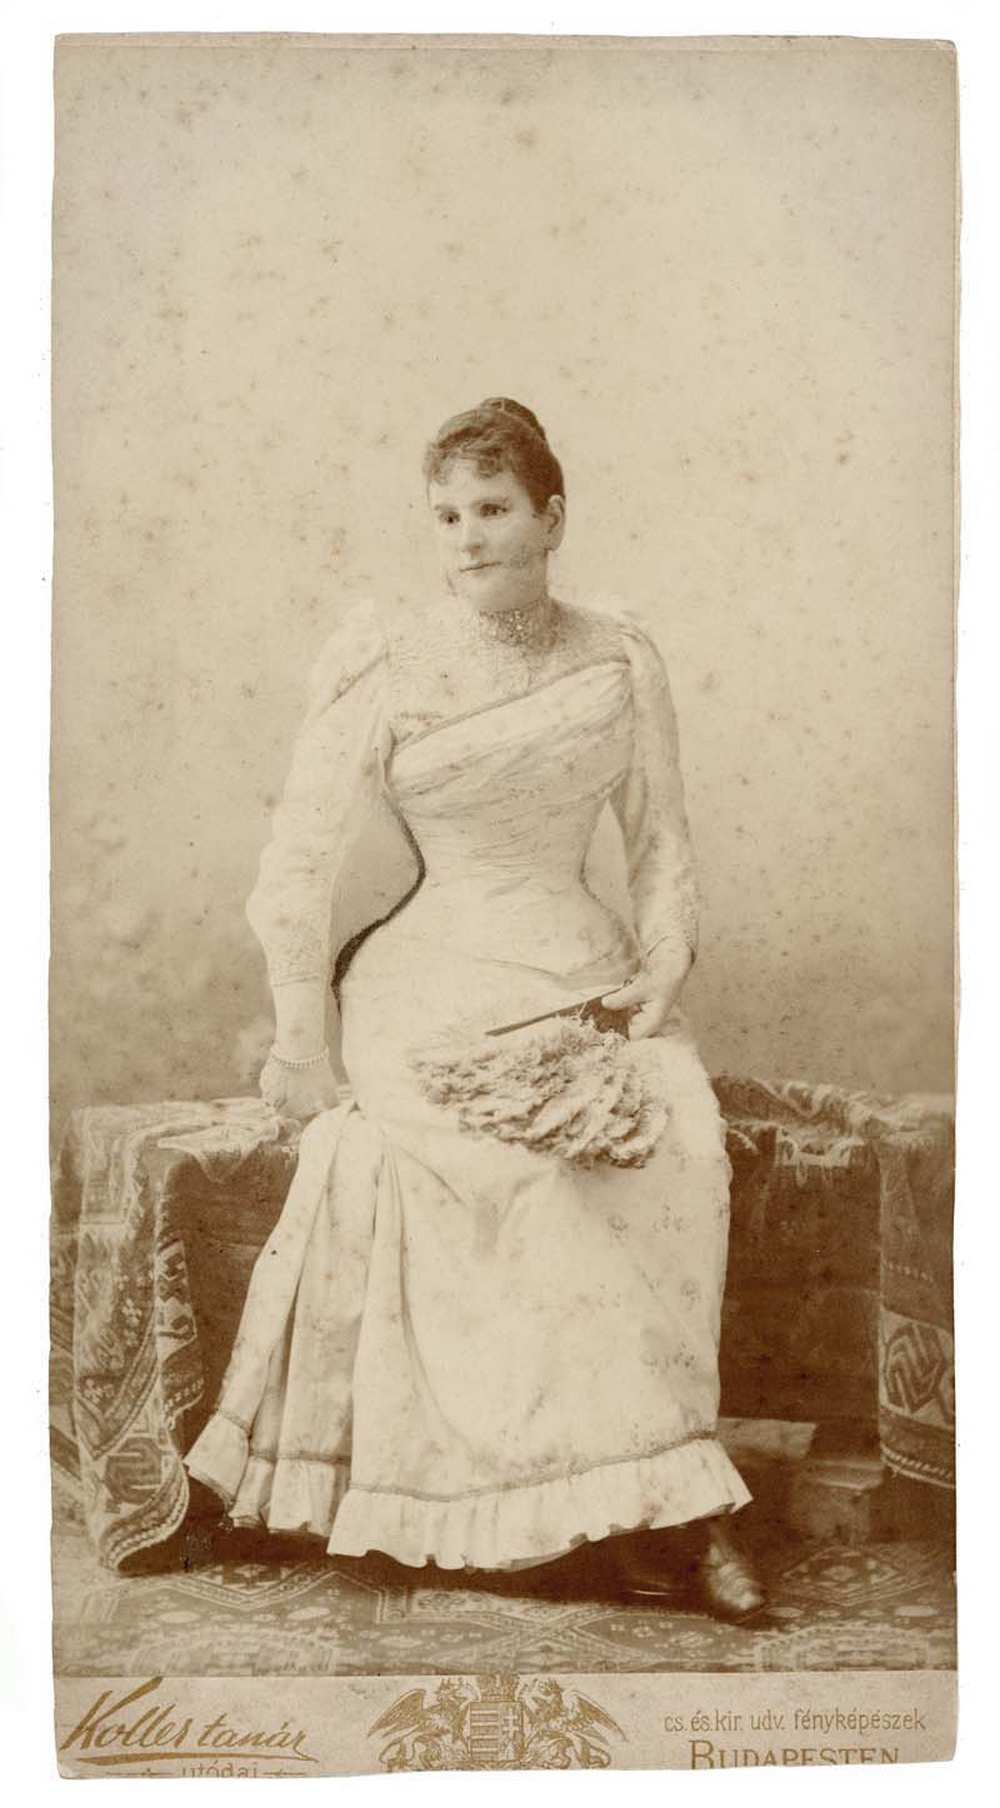 Koller Károly utódai: Fehér ruhás nő egész alakos portréja, 1892. Jelzet: FTB 62 – Történeti Fénykép- és Videótár